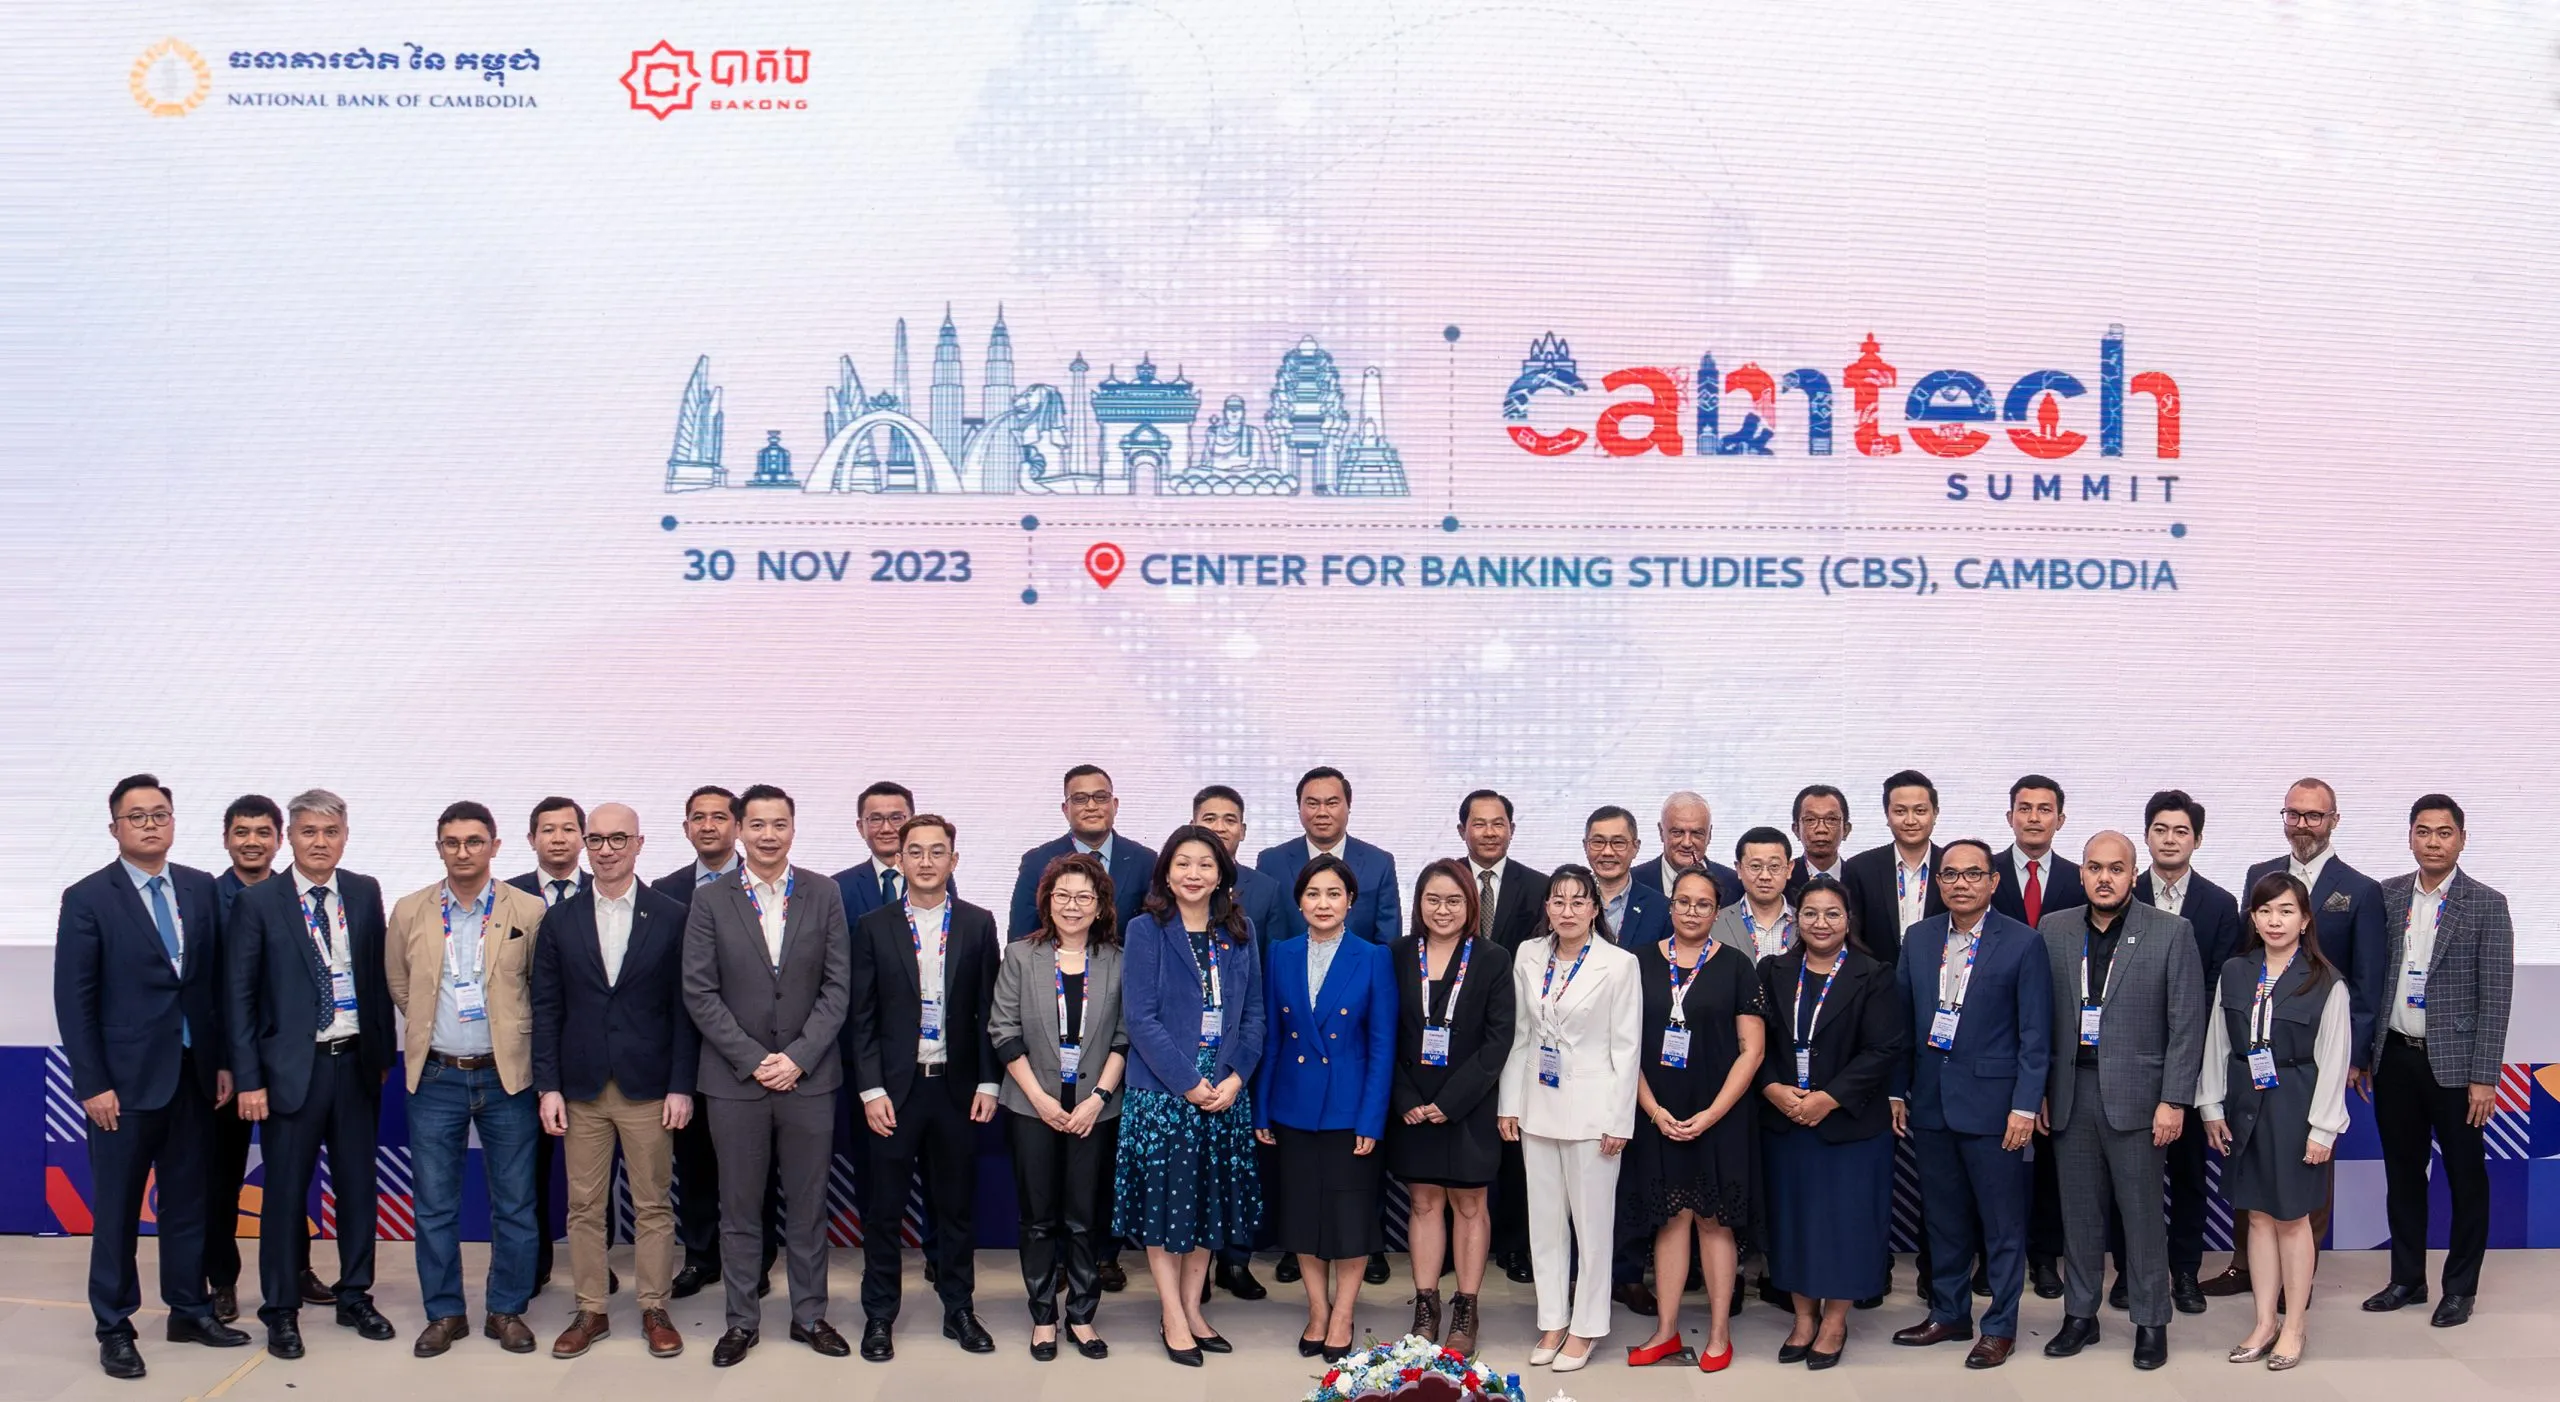 Ngân hàng ABA và Huawei Campuchia là cột mốc quan trọng cho Hội nghị thượng đỉnh CamTech 2023